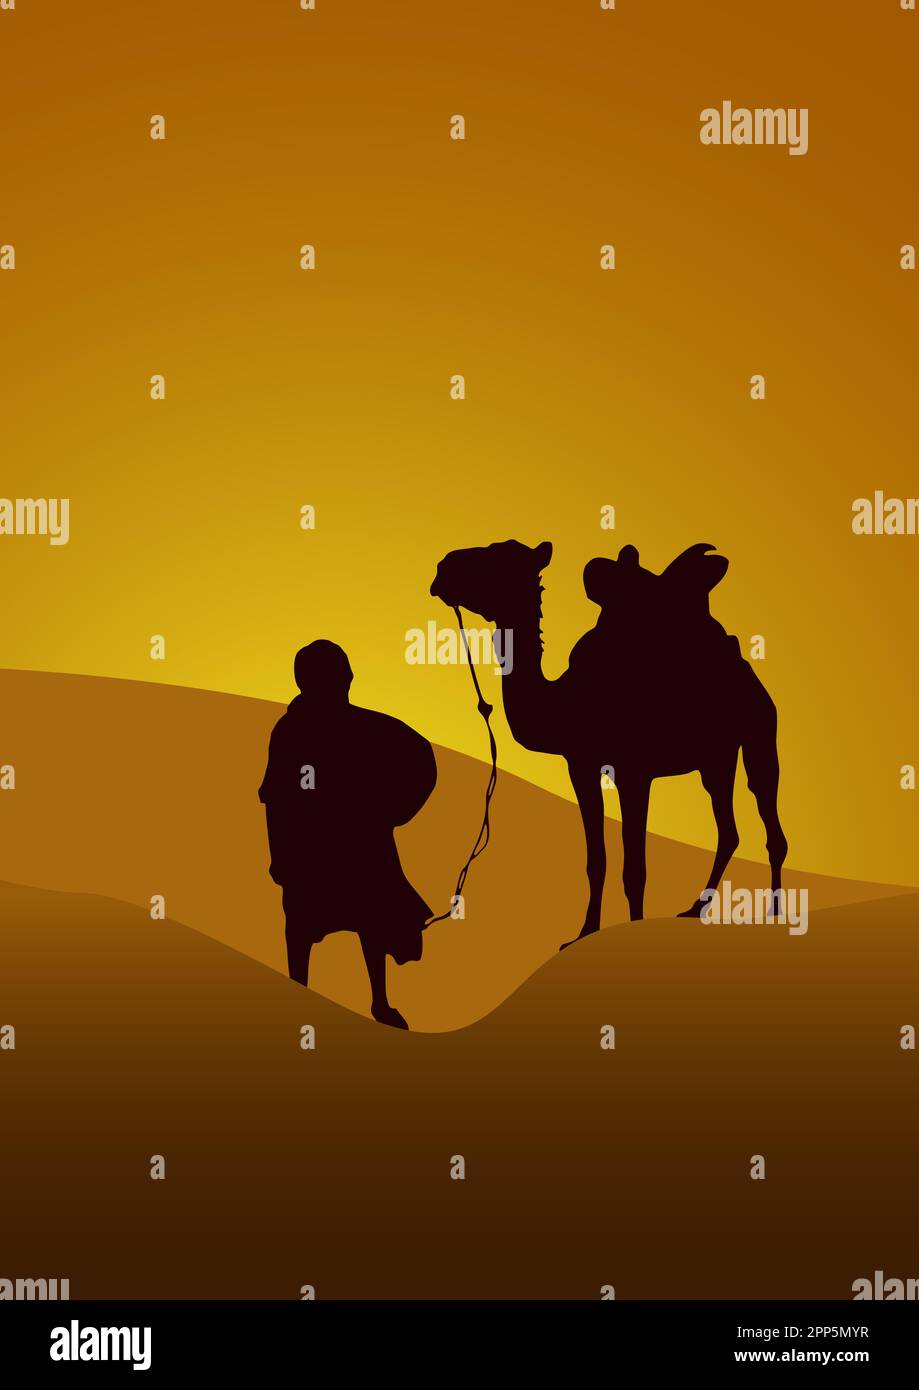 caravane dans le désert, coucher de soleil. Poster vecteur chameau et bédouin dans le Sahara en silhouette Illustration de Vecteur